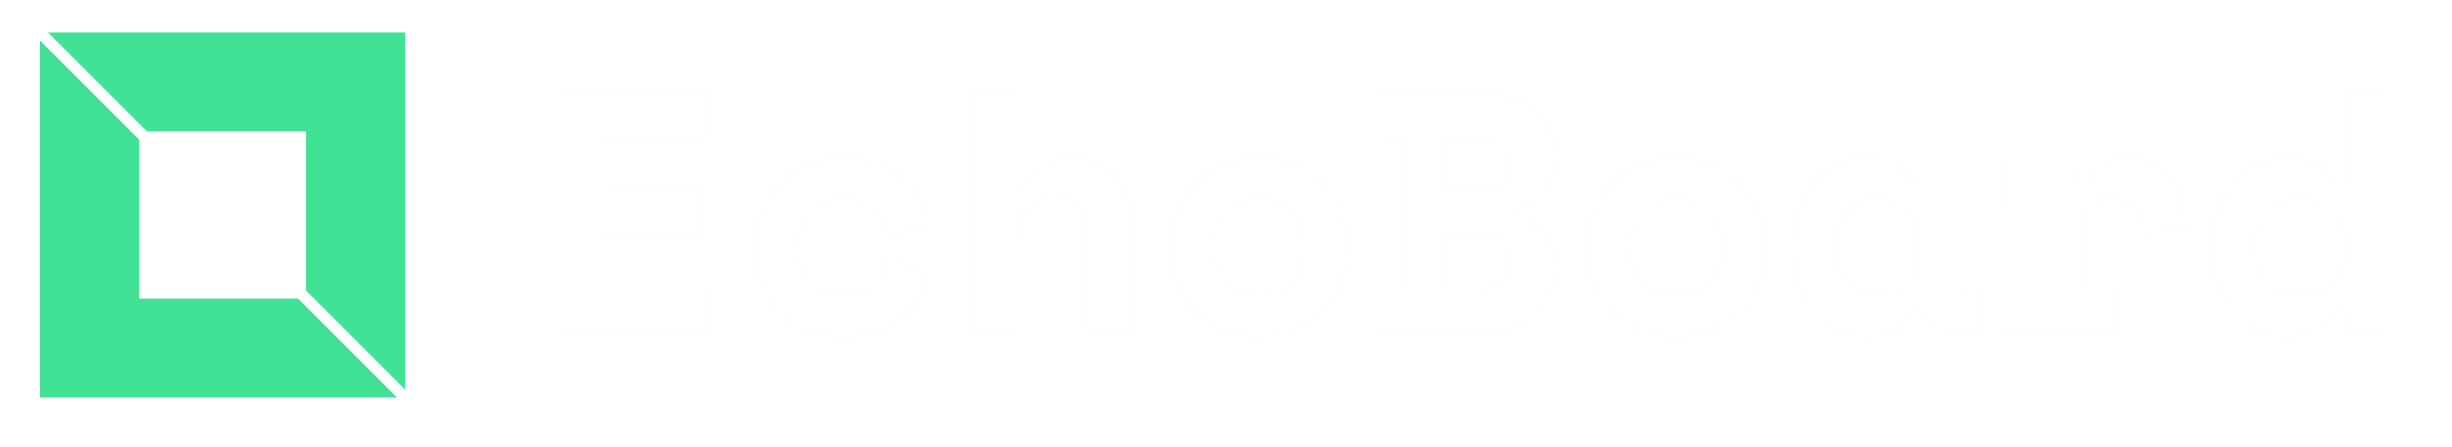 Uservoice's logo